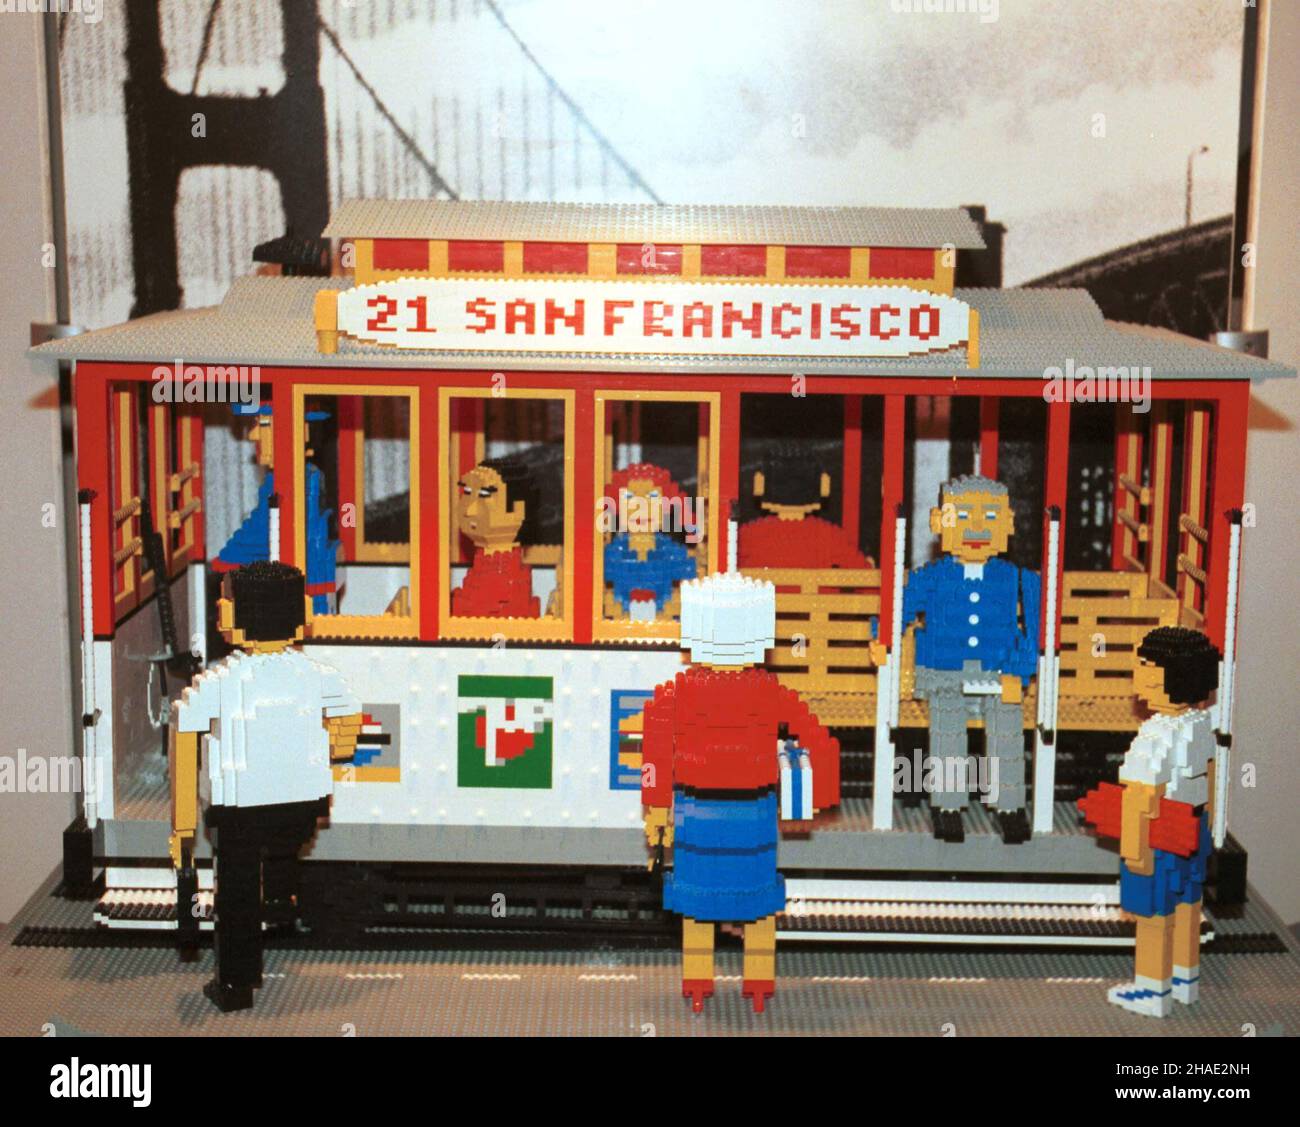 Wroc³aw, 04.09.1995. Scenka z San Francisco zbudowana z klocków Lego na wystawie pt. "W 80. dni dooko³a œwiata". (kru) PAP/Adam Hawa³ej Foto Stock